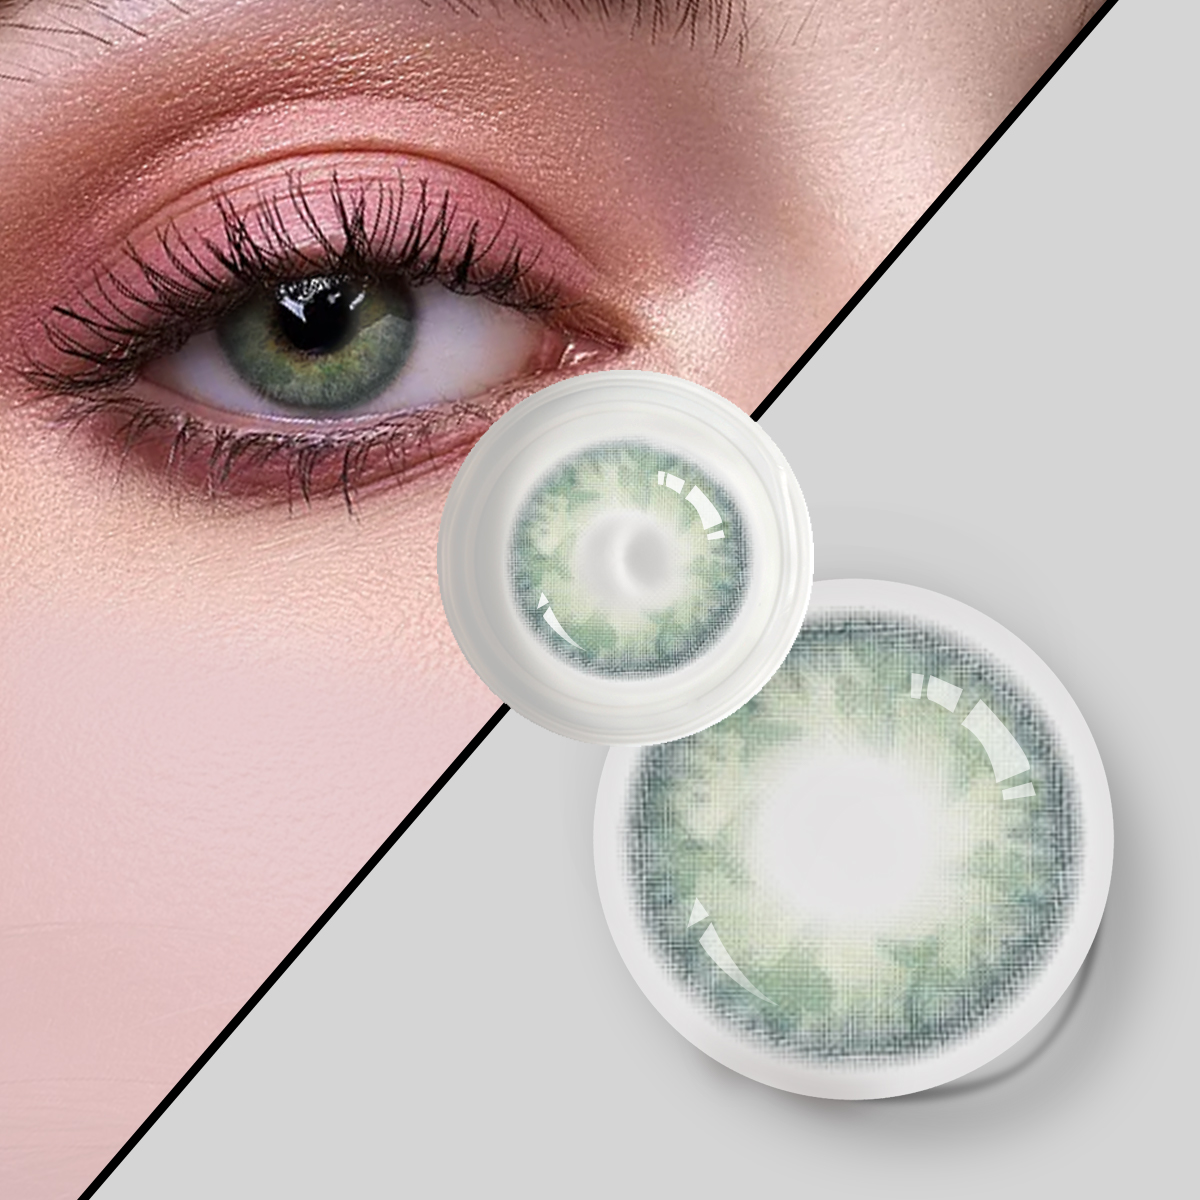 Divers Beauty Tone yeşil yeni görünüm 1 yıl tek kullanımlık 14.2 mm büyük göz boyutu toptan renkli göz kontakt lensleri